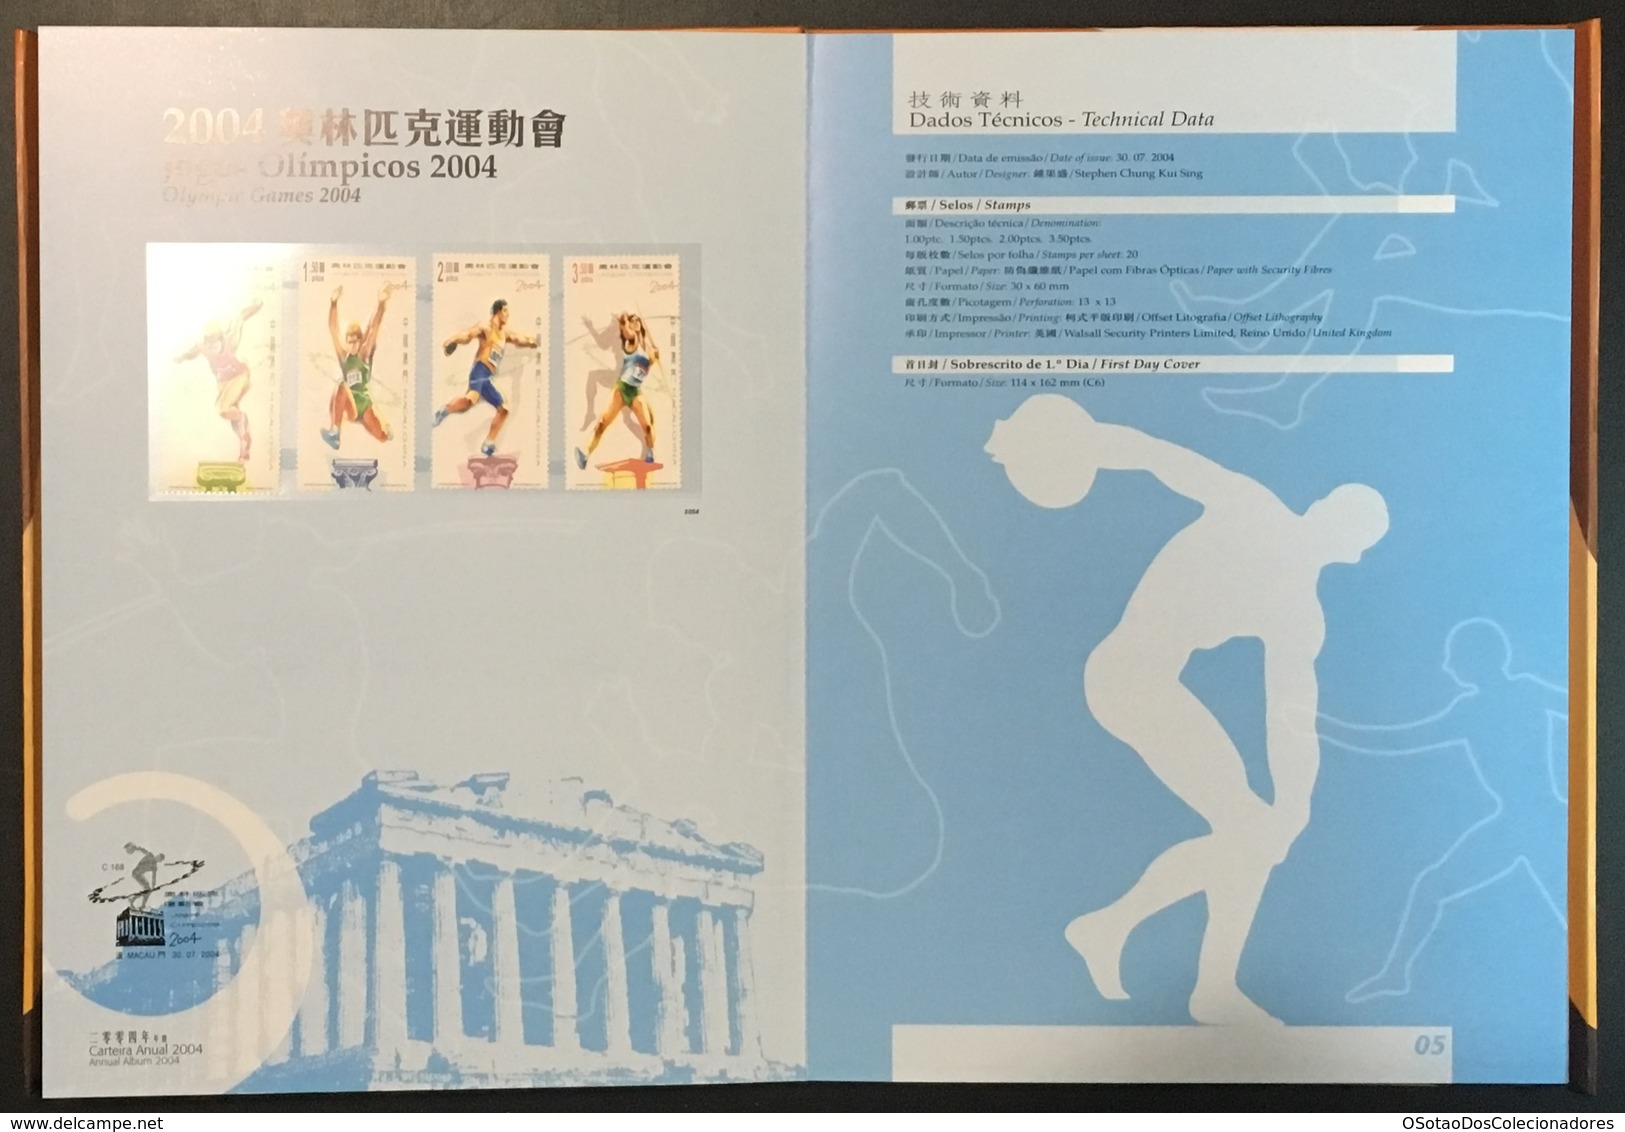 Macau Macao - China Chine - Annual Album 2004 - Macao's Stamps - Livro Anual de Selos de Macau 2004 - Carteira Jaarboek